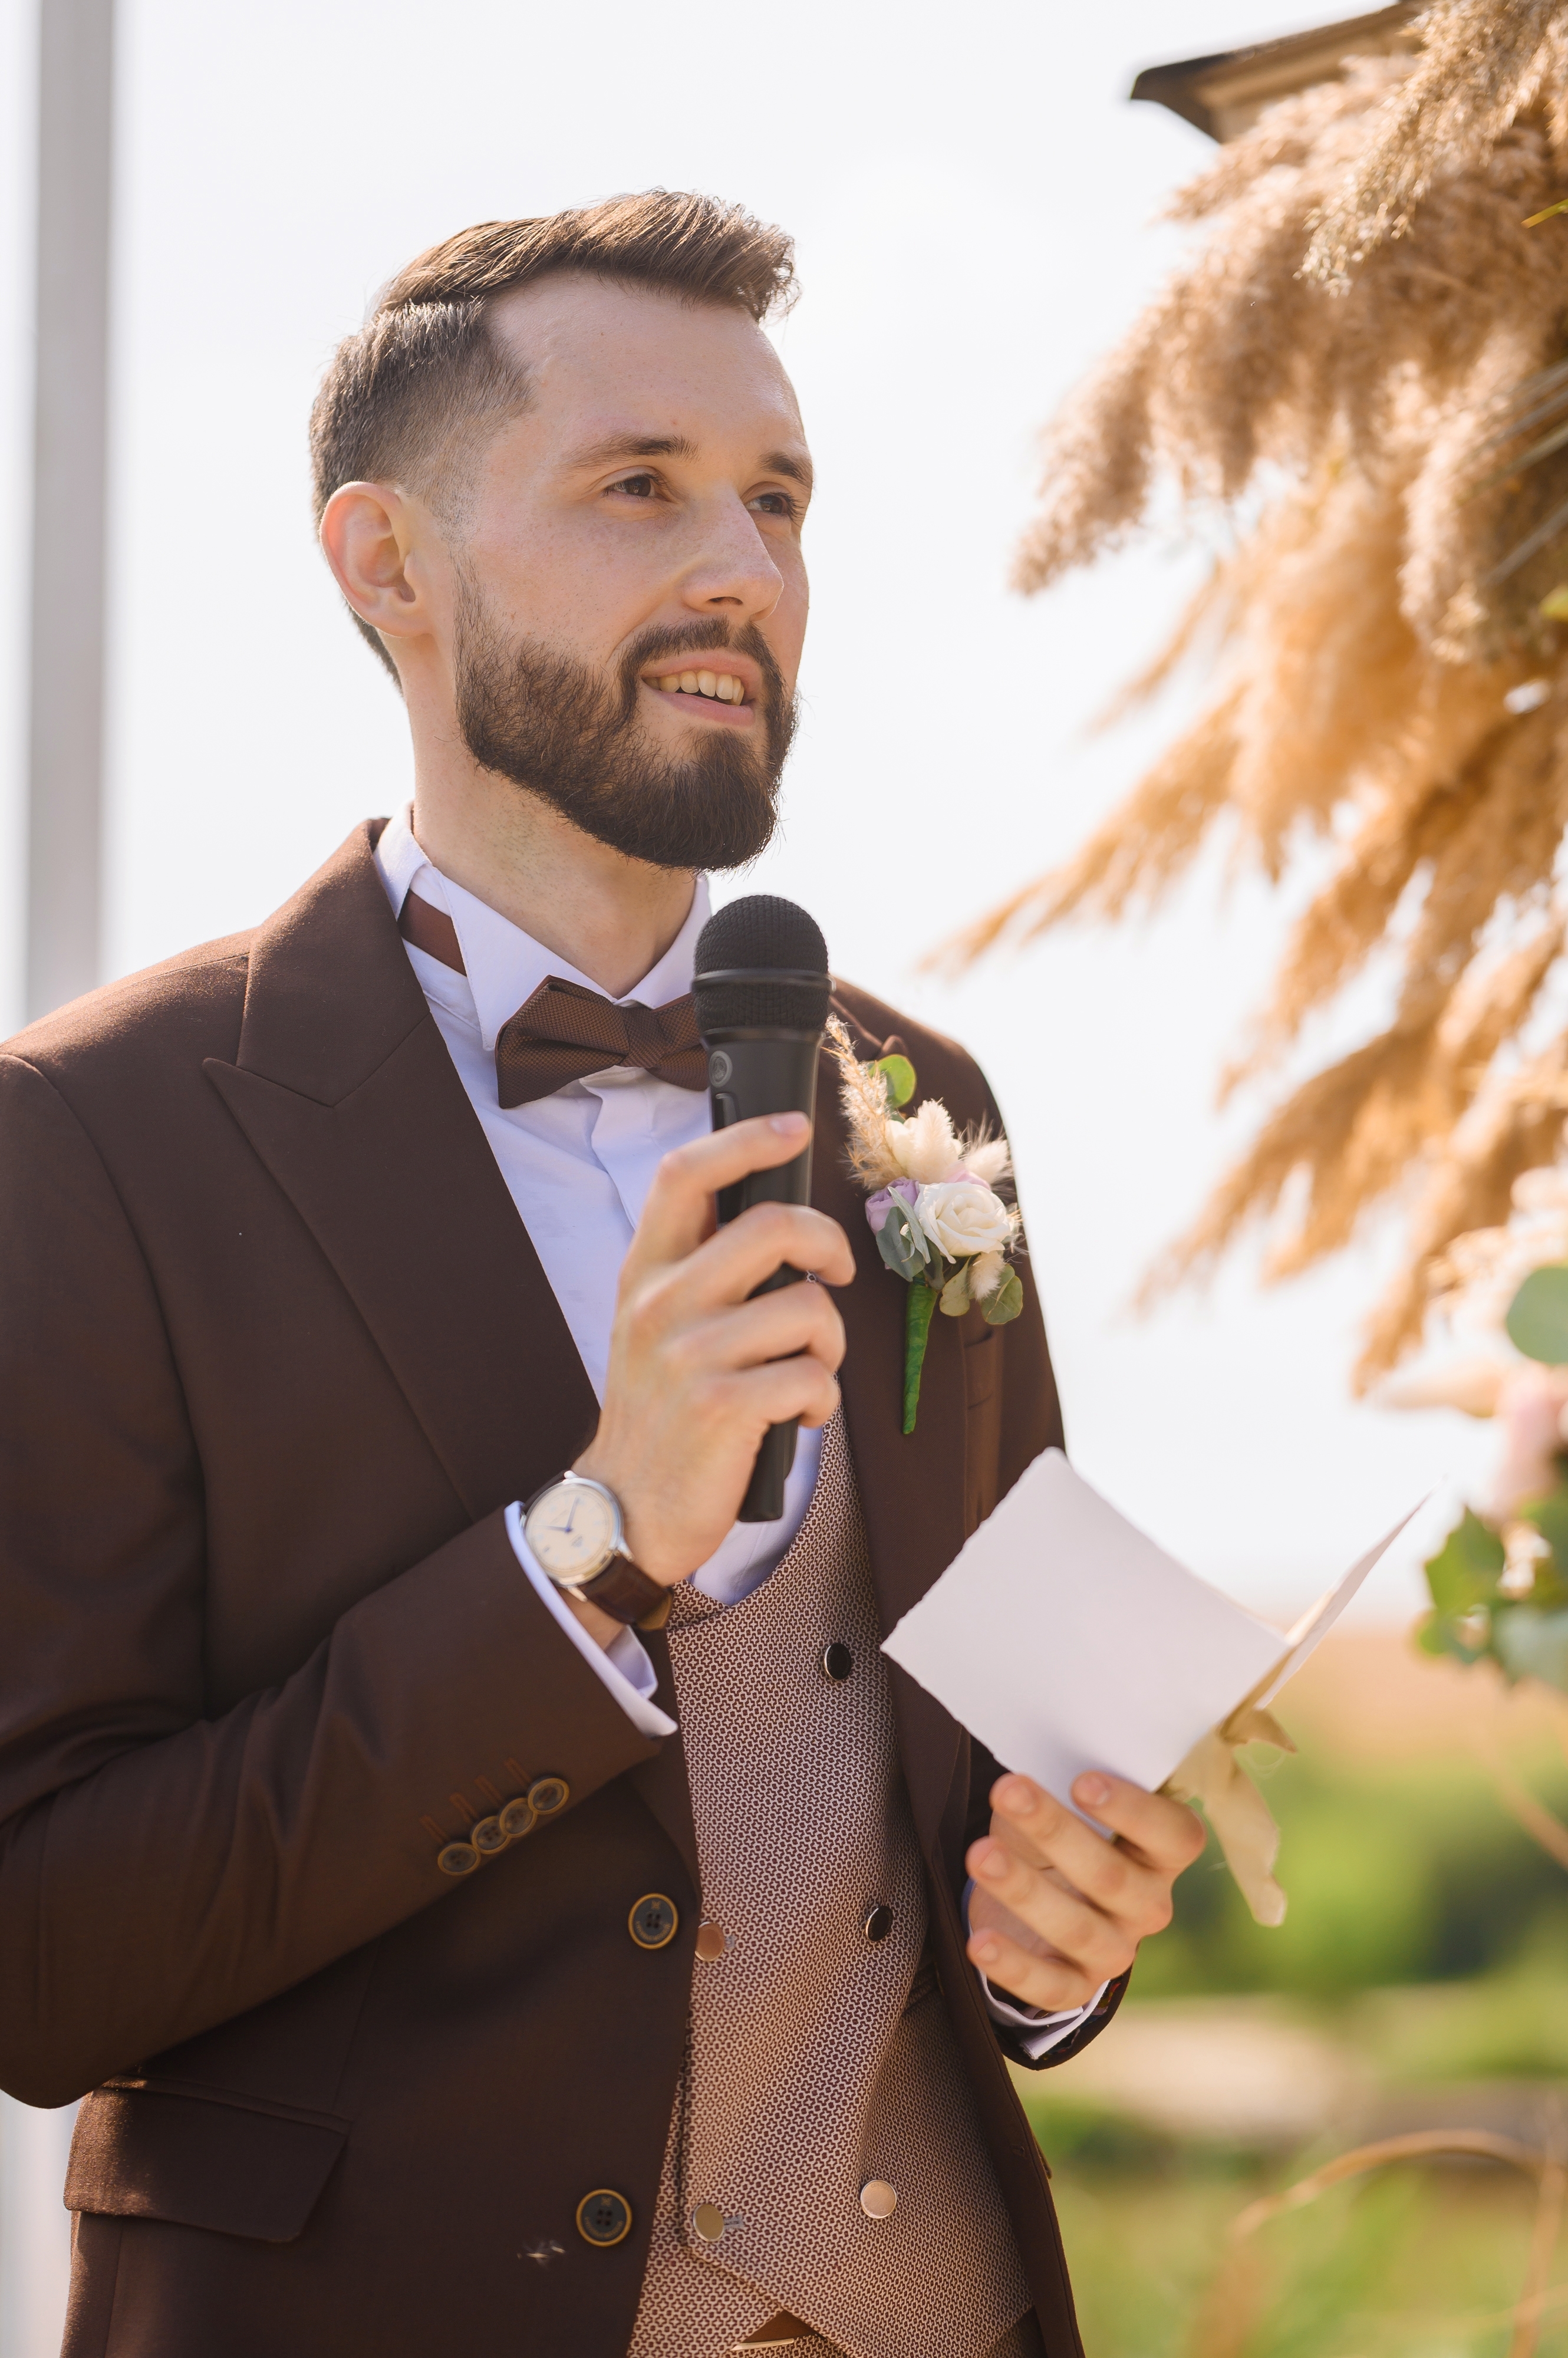 Un homme vêtu d'un costume marron avec une boutonnière et un nœud papillon prononçant un discours lors d'un mariage | Source : Shutterstock